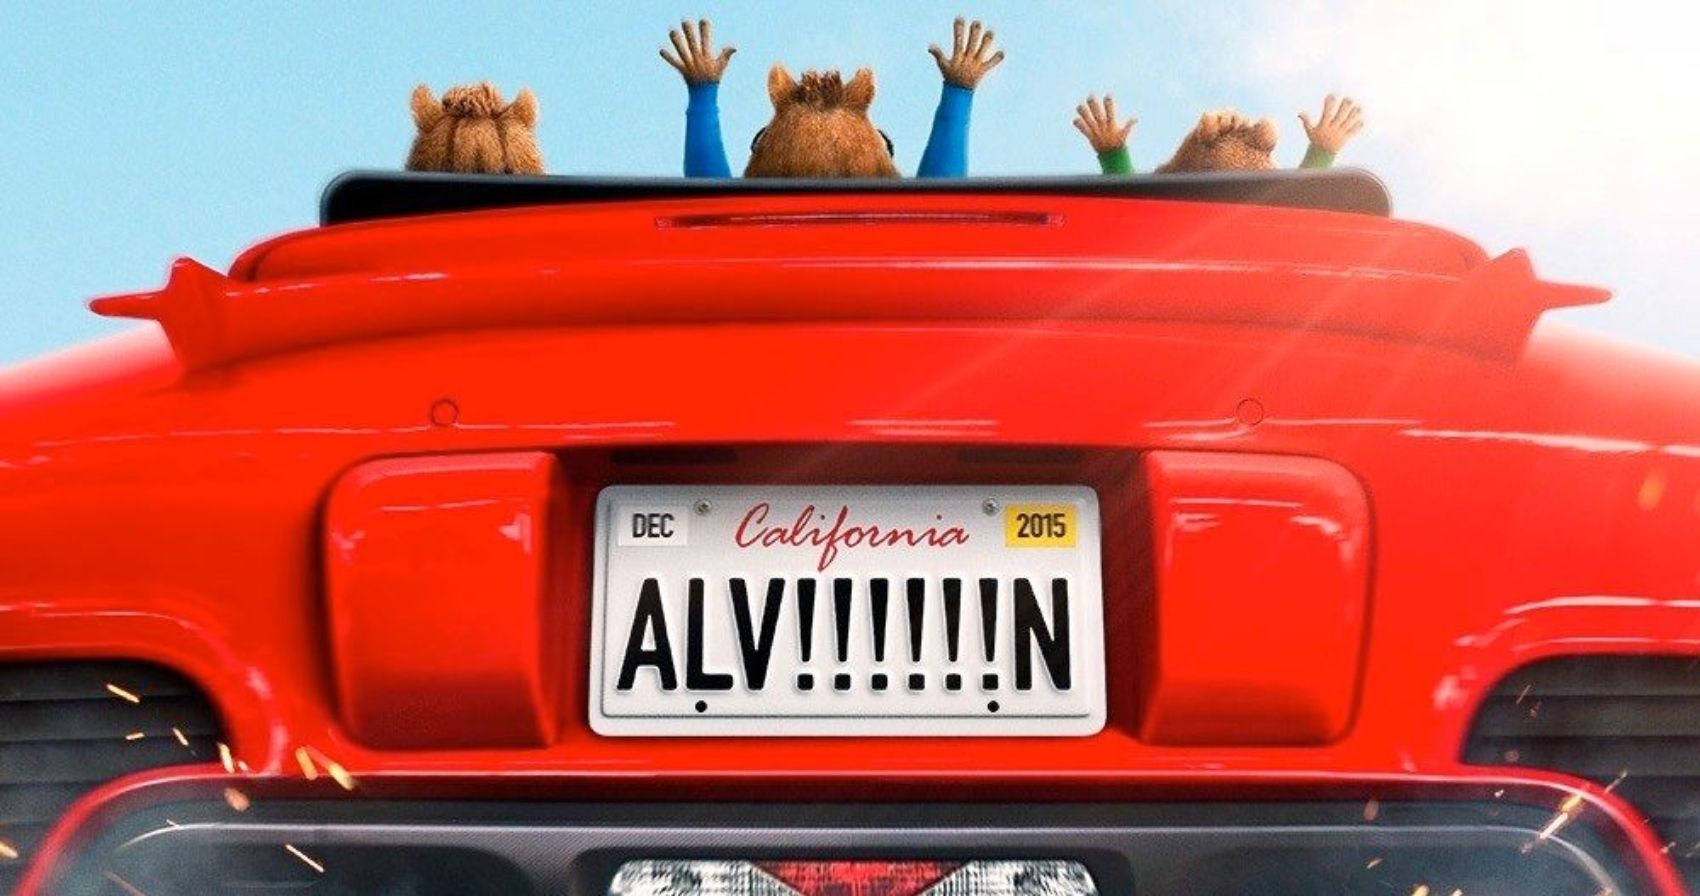 El póster de Alvin y las ardillas 4 inicia un viaje épico por carretera (1)